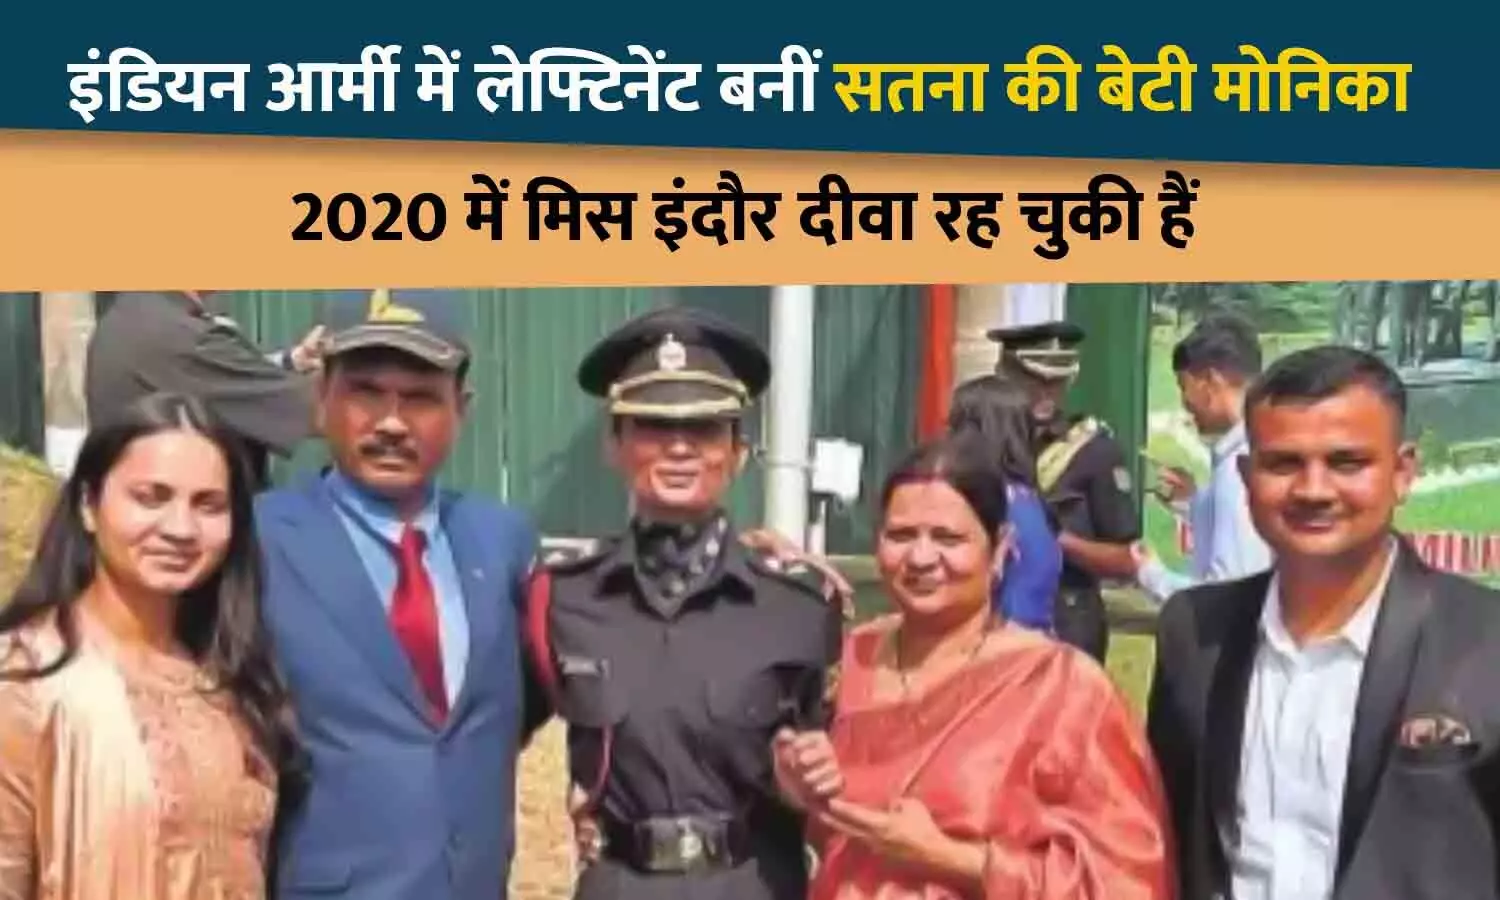 इंडियन आर्मी में लेफ्टिनेंट बनीं सतना की बेटी मोनिका द्विवेदी, 2020 में मिस इंदौर दीवा रह चुकी हैं